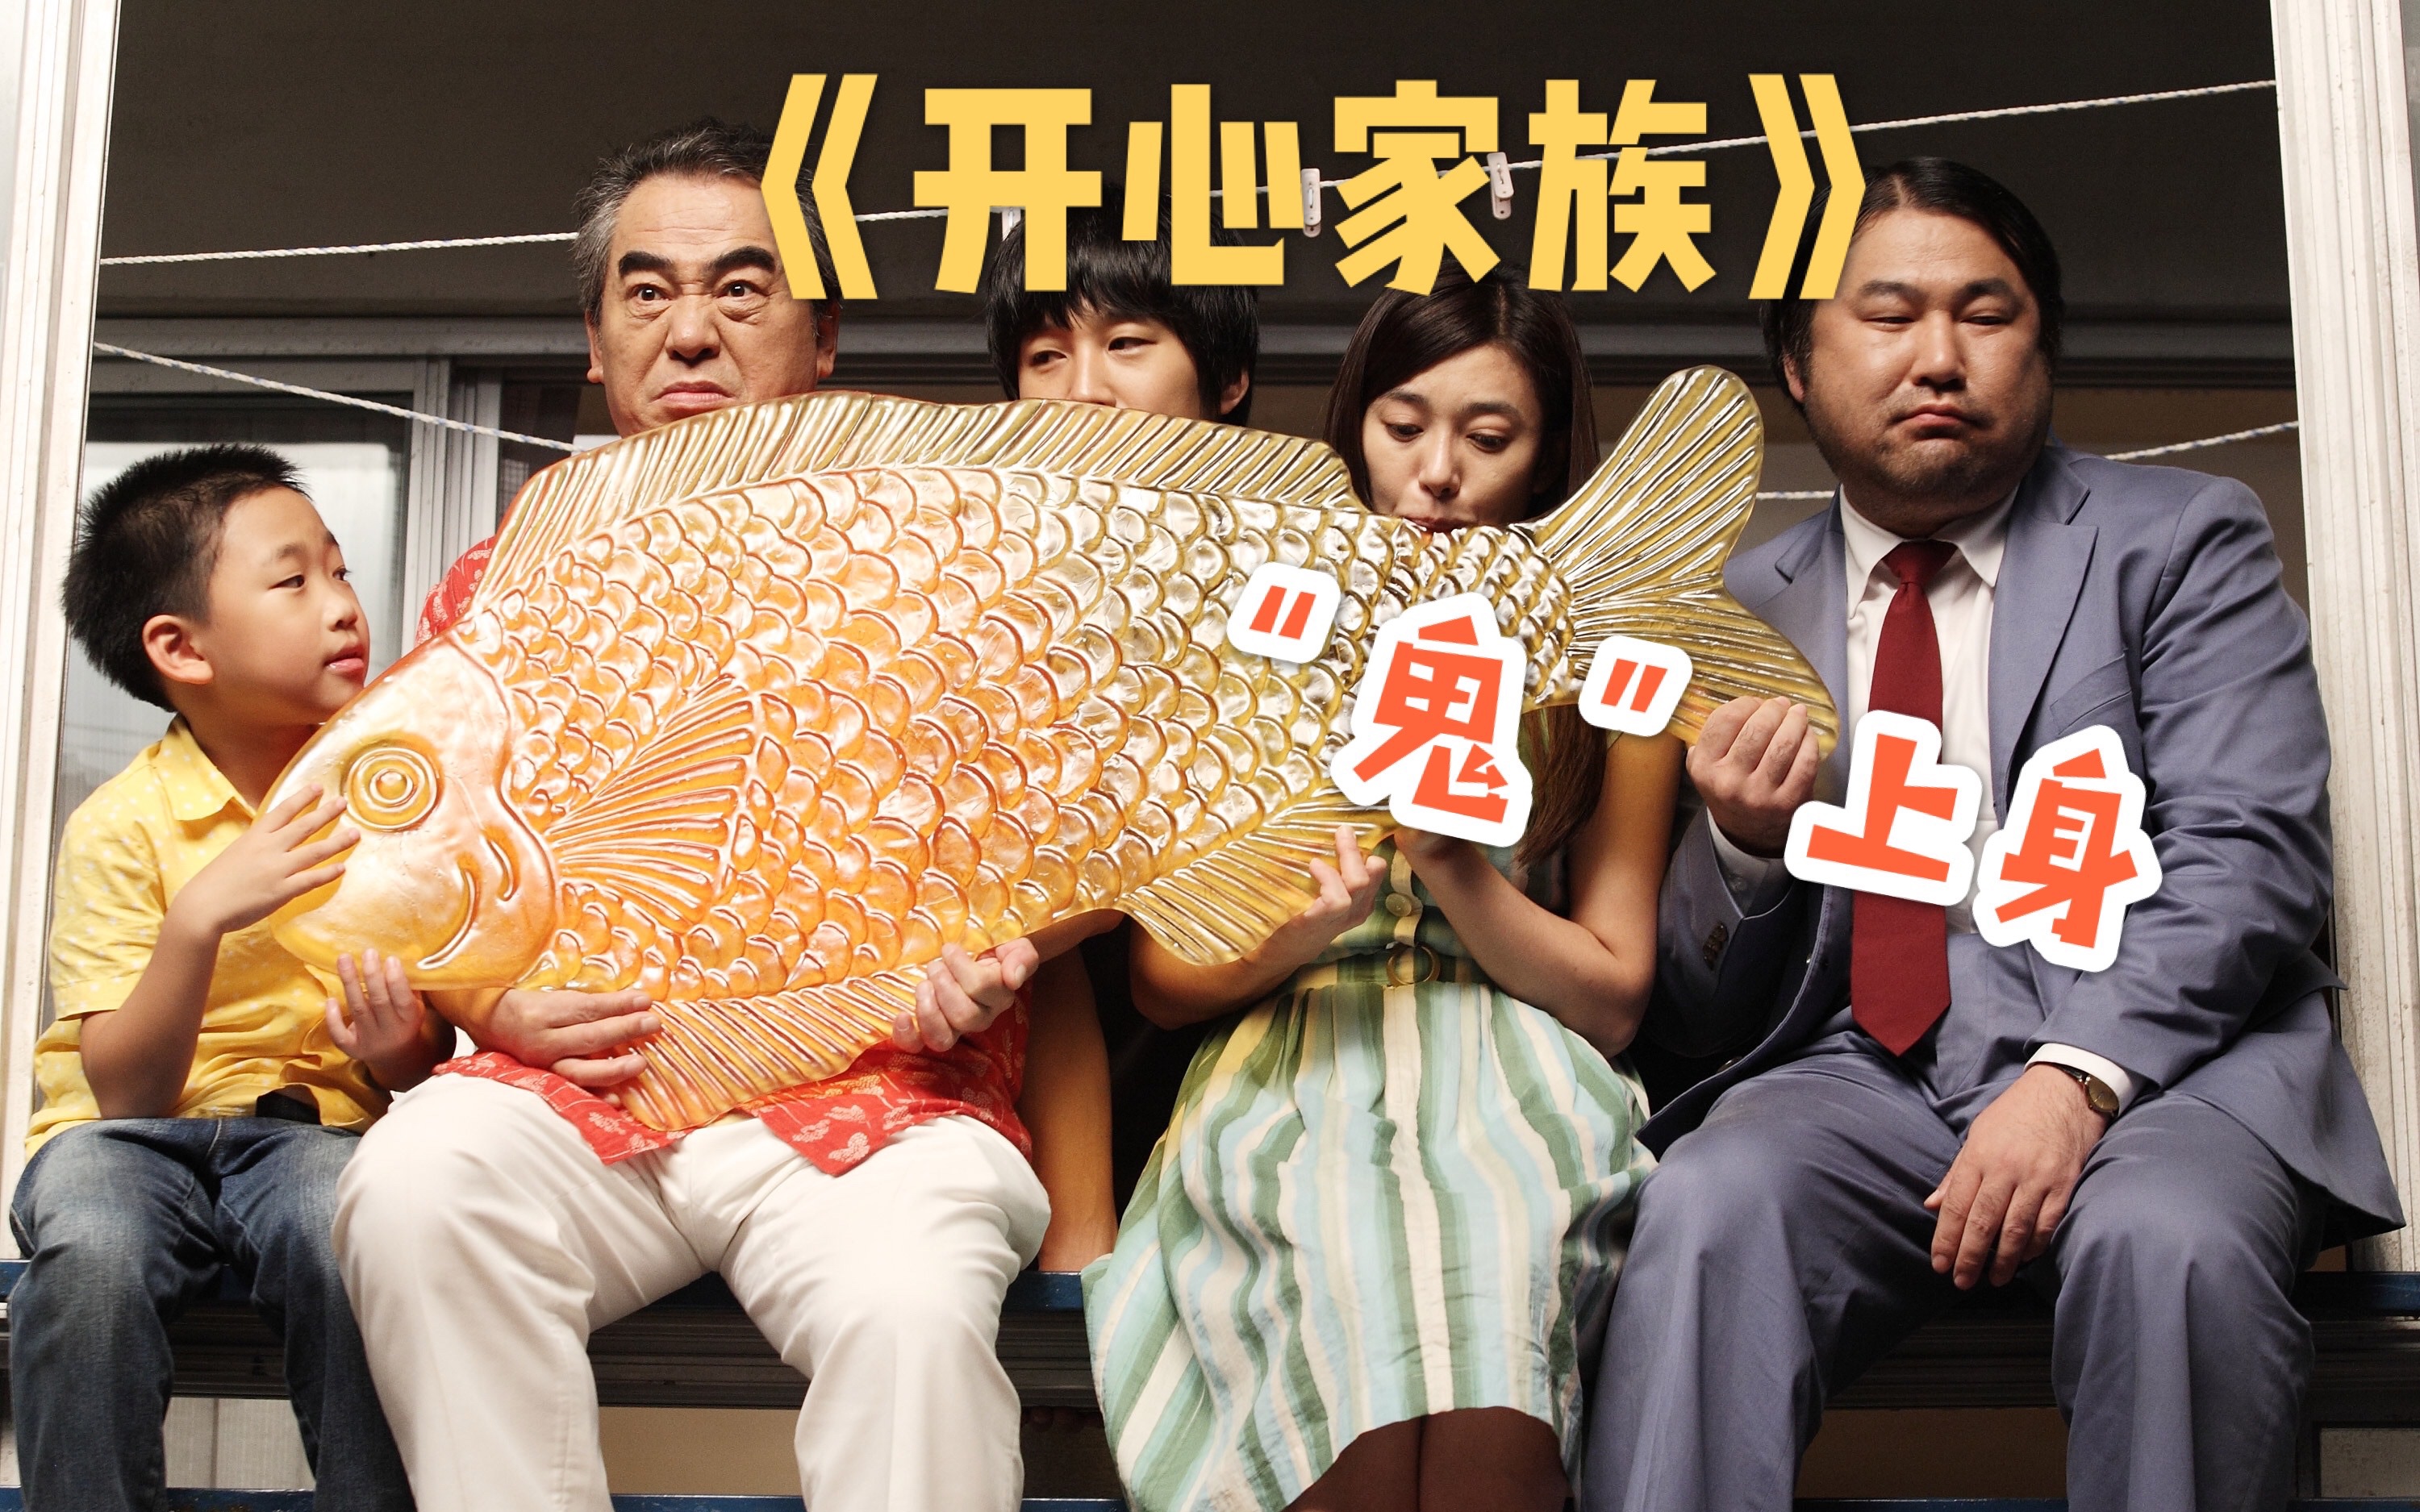 豆瓣8.5,韩国创纪录温情喜剧"鬼"片《开心家族,笑着开头哭到结尾